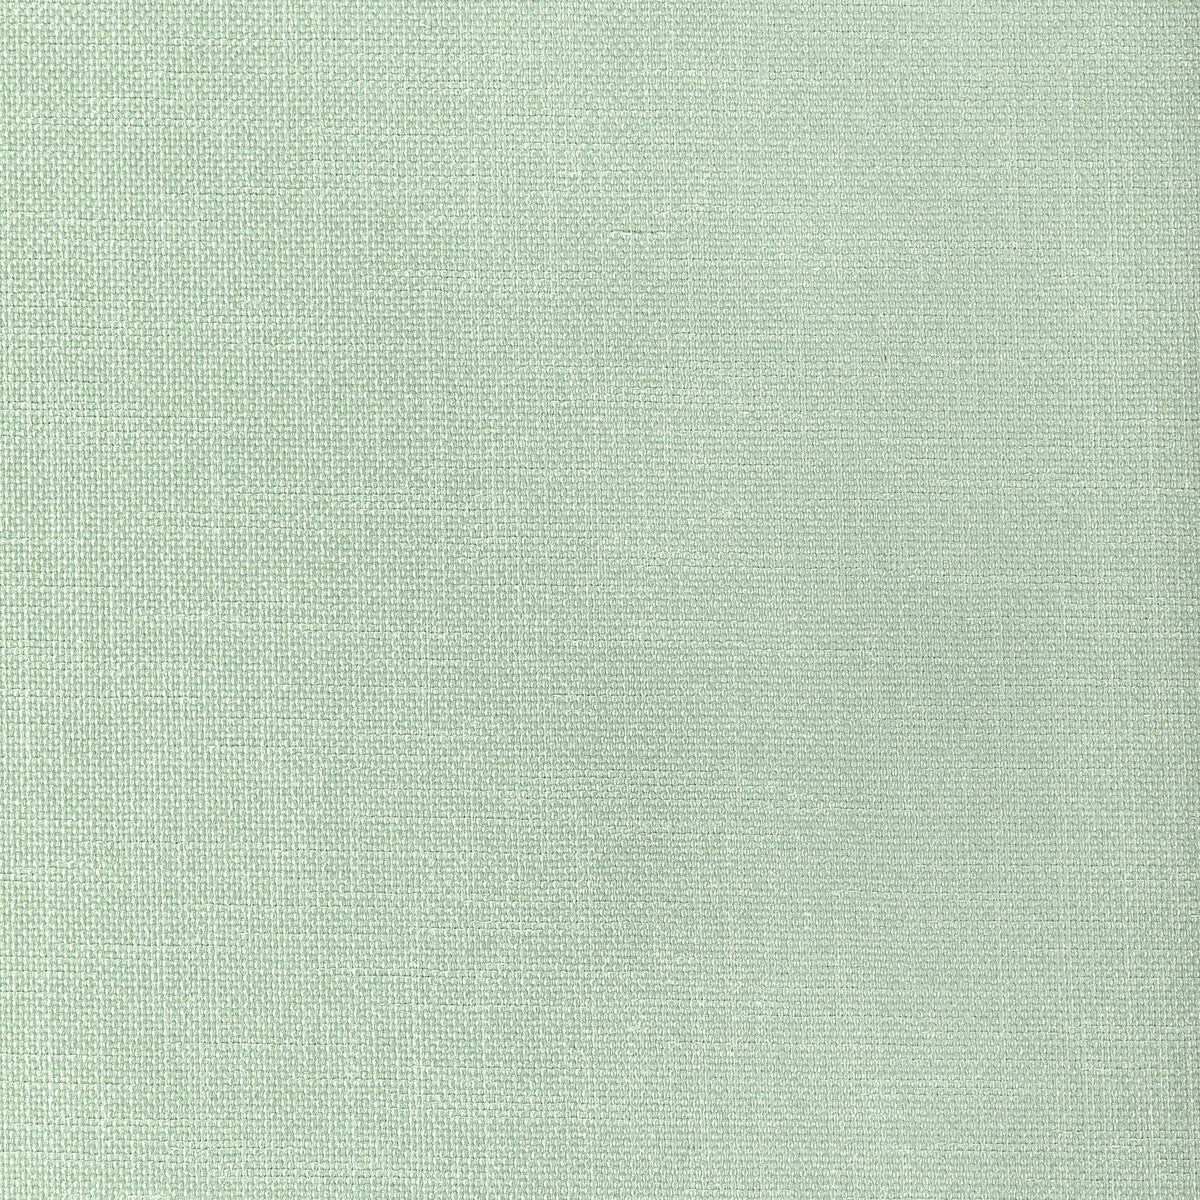 Kravet Basics fabric in 33120-123 color - pattern 33120.123.0 - by Kravet Basics